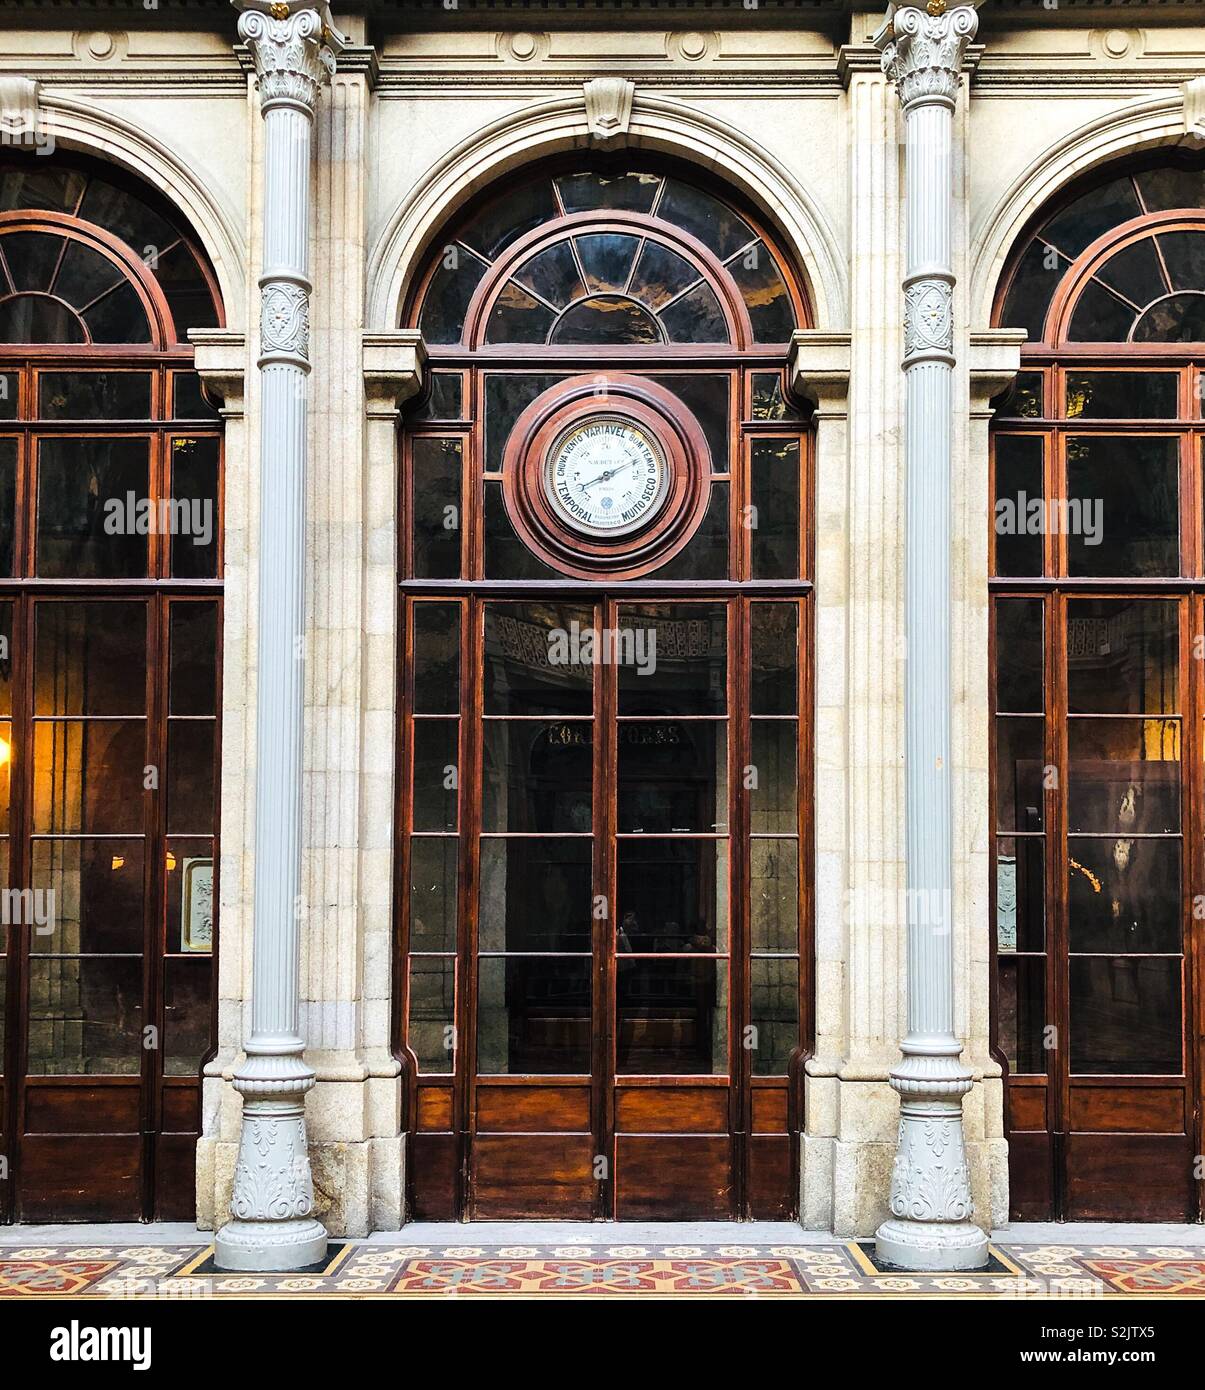 Grand, avec portes vitrées, de style néoclassique construit en baromètre au-dessus de sol carrelé, à l'intérieur de la Bourse Palais Bolsa, à l'Infante D Henrique Sq, Porto, Portugal Banque D'Images